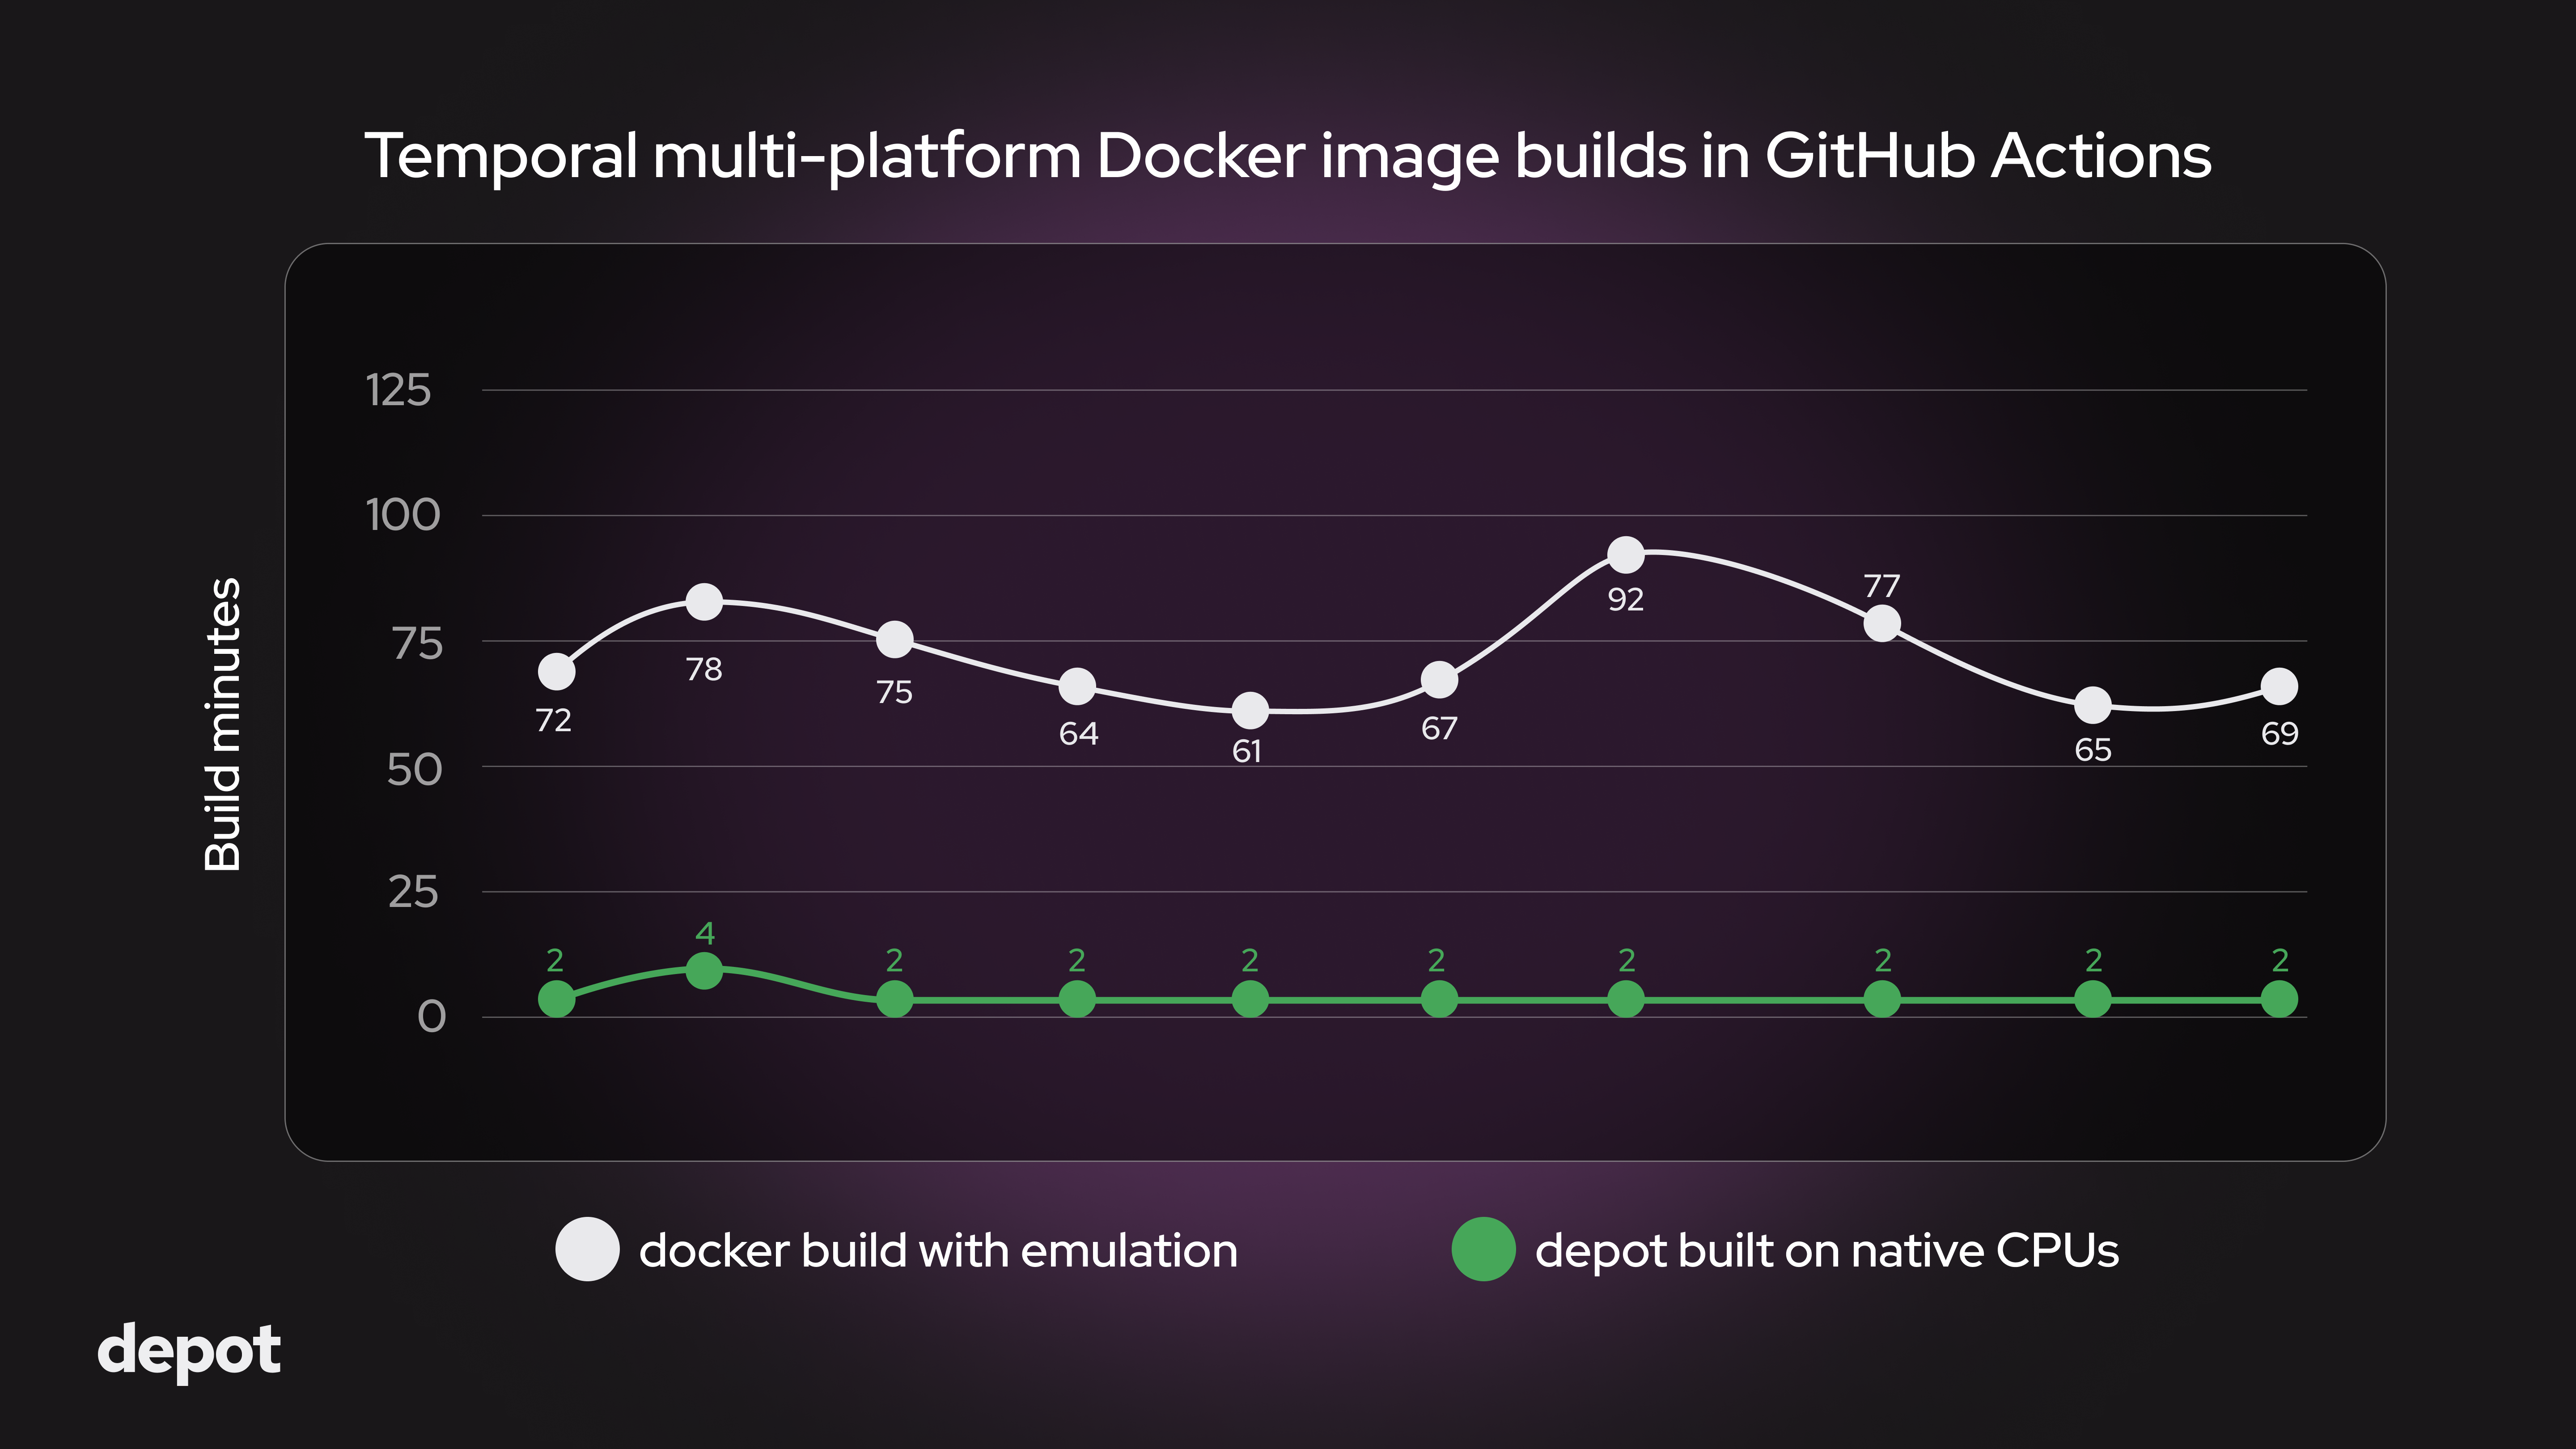 Temporal multi-platform Docker image build benchmark